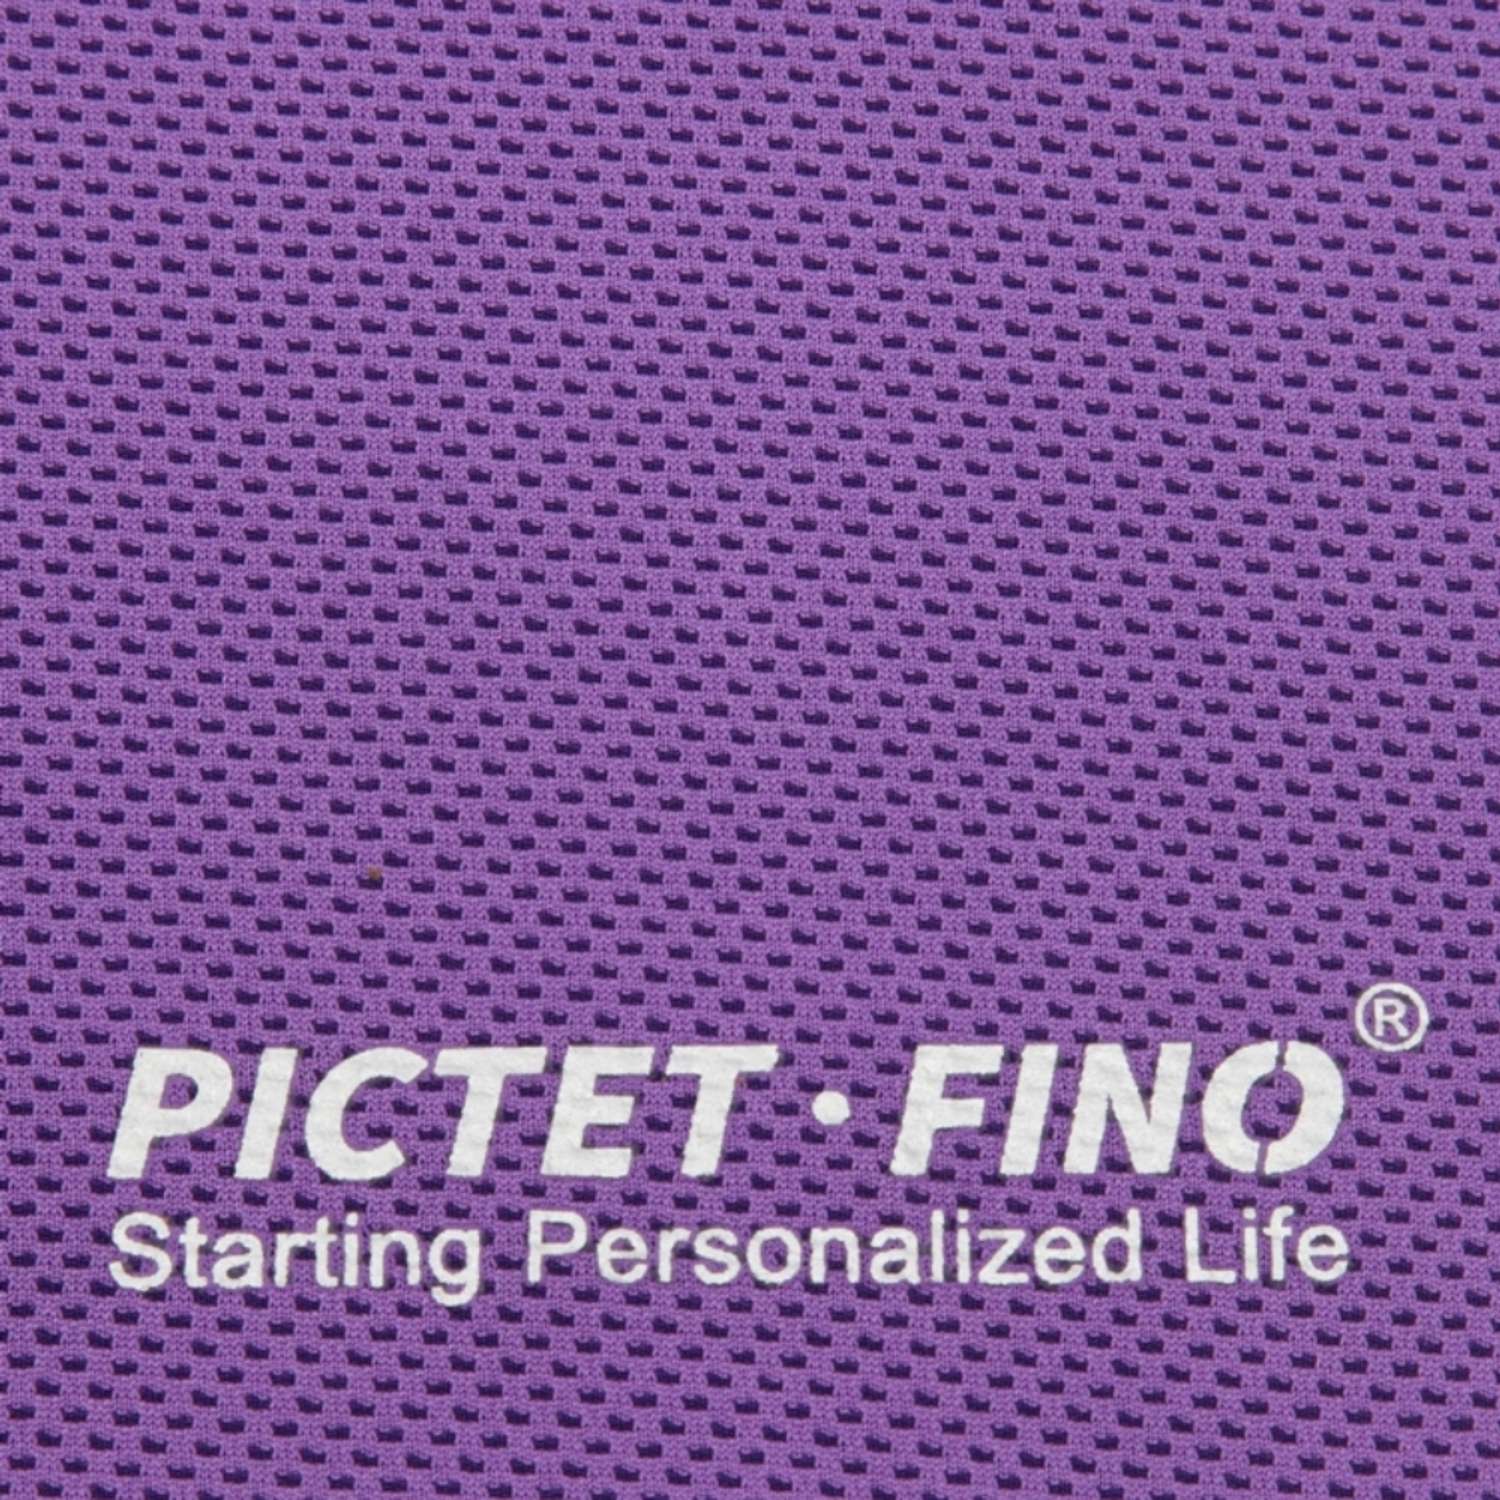 Спортивное полотенце PICTET FINO охлаждающее фиолетовое в пластиковой банке - фото 3